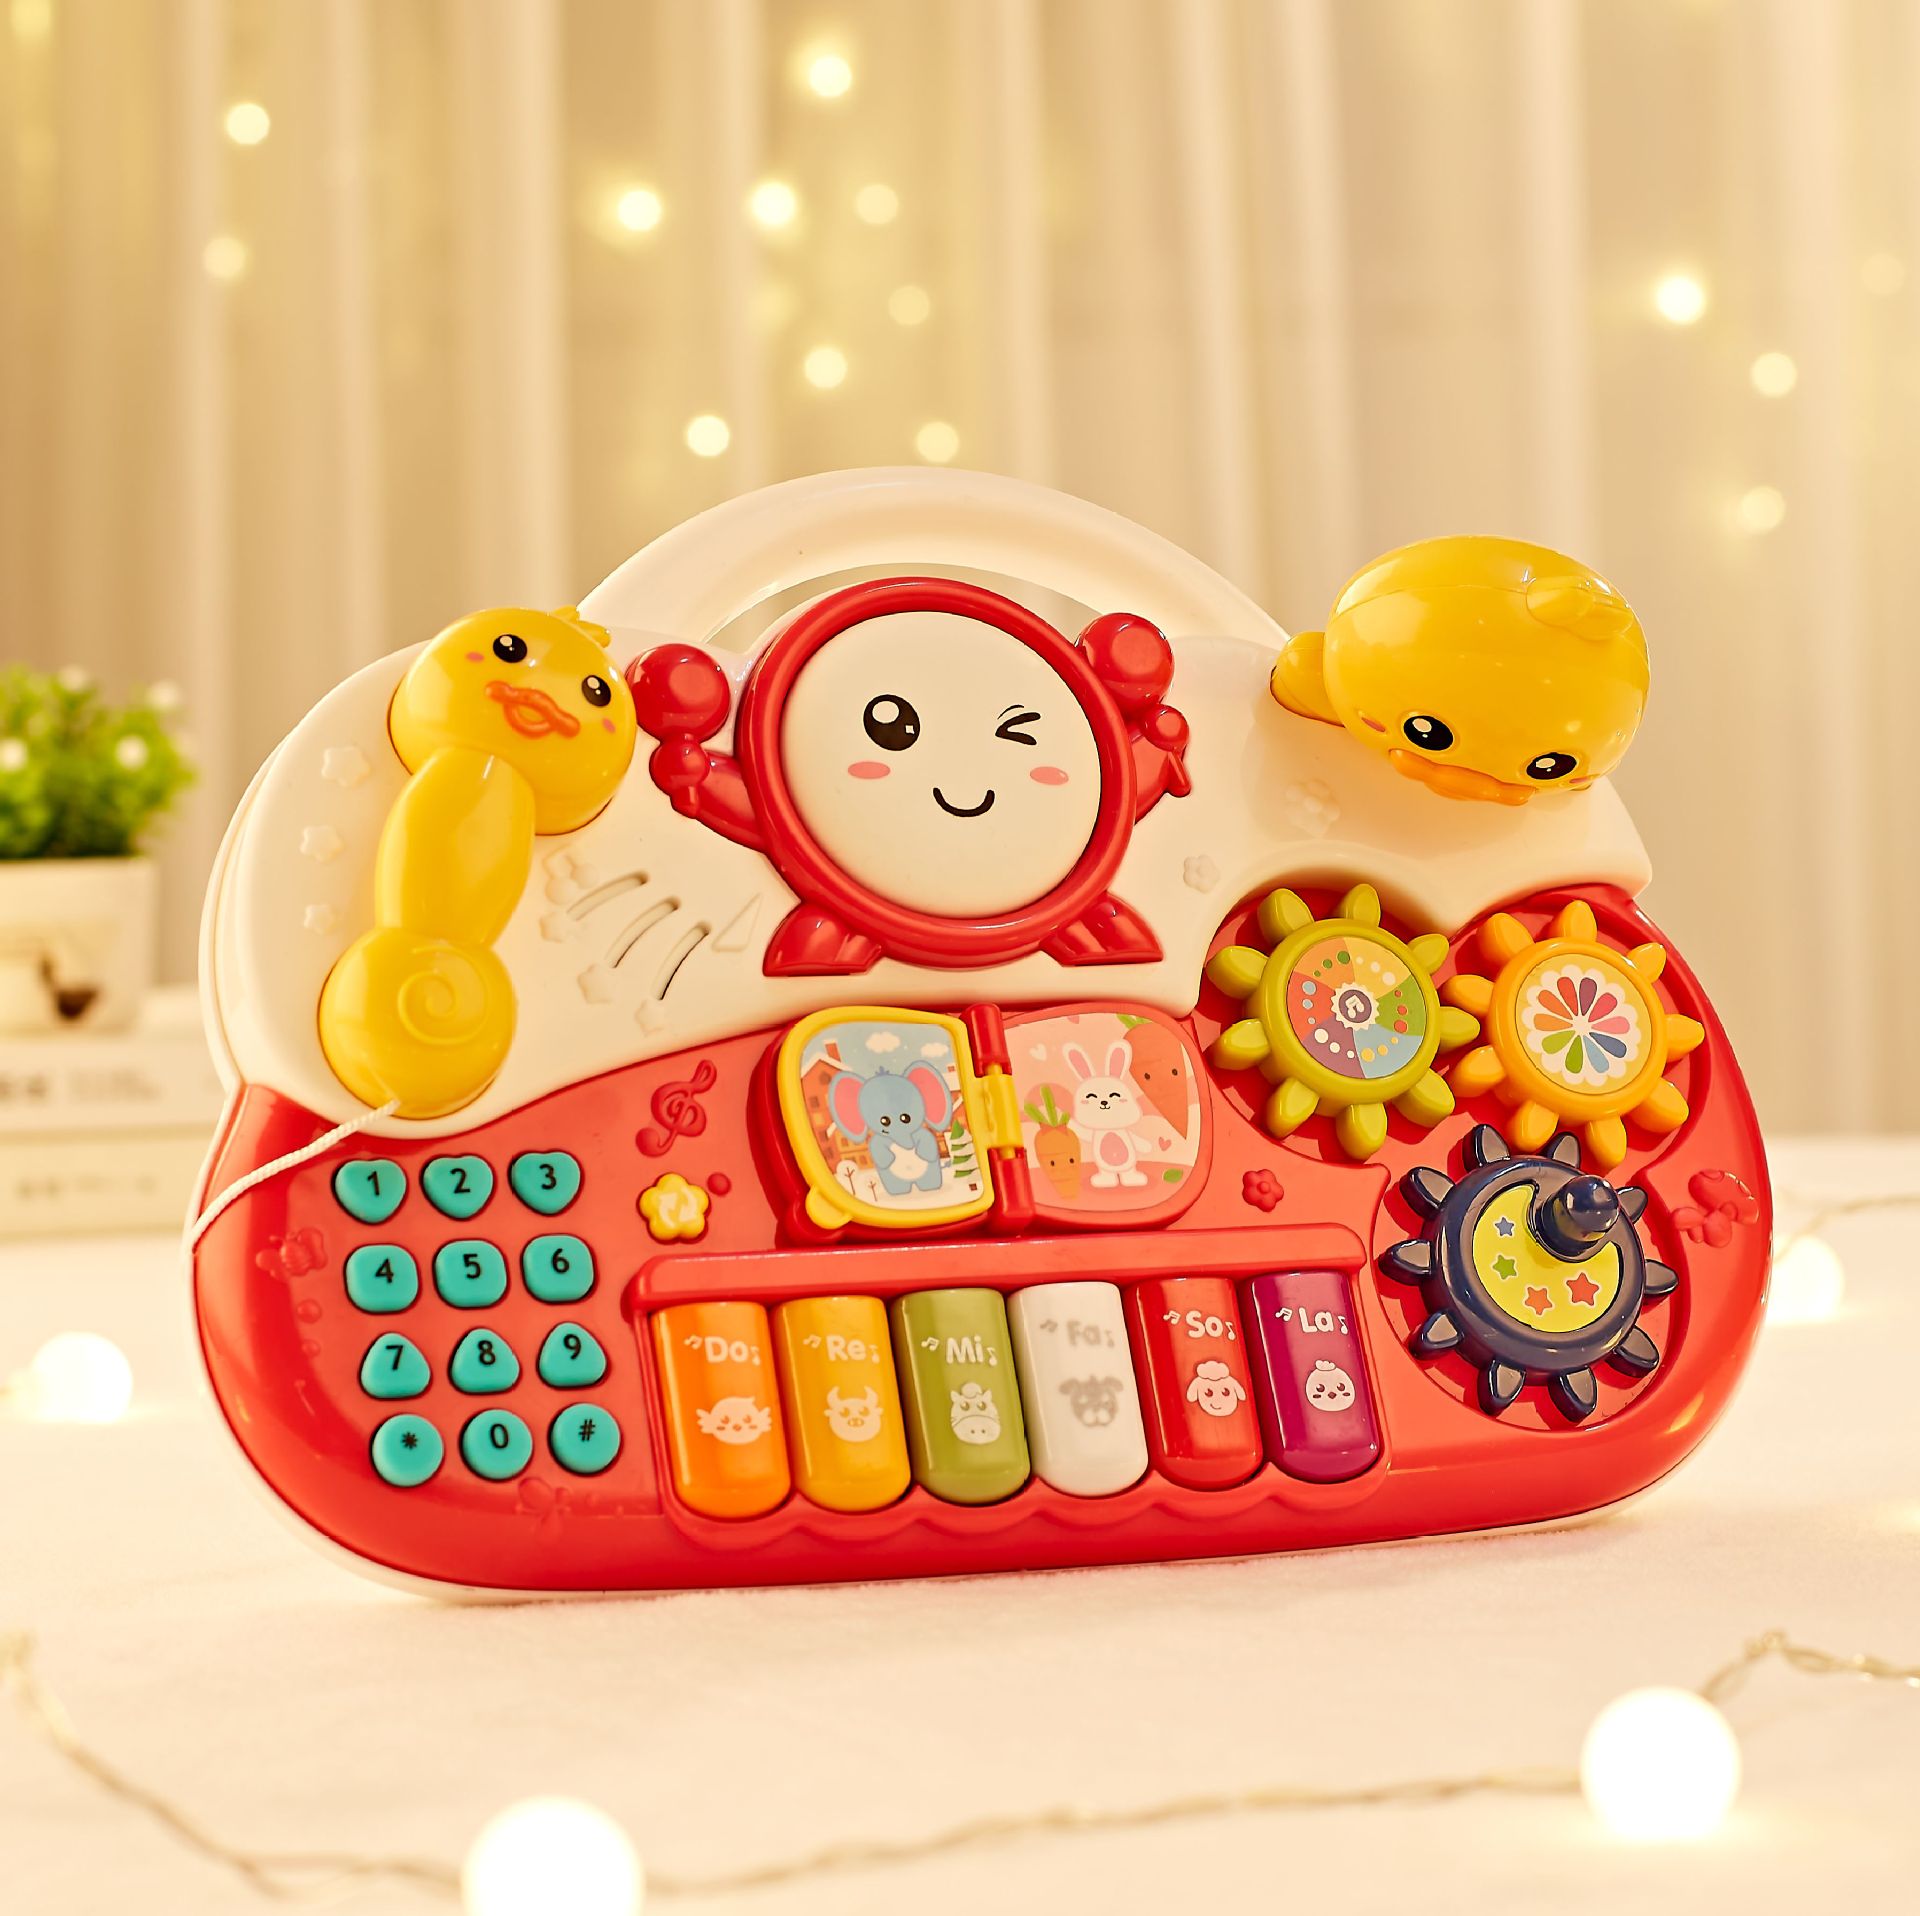 雅诺多功能电子琴 婴儿益智玩具0-1-3岁 儿童早教益智电话机玩具